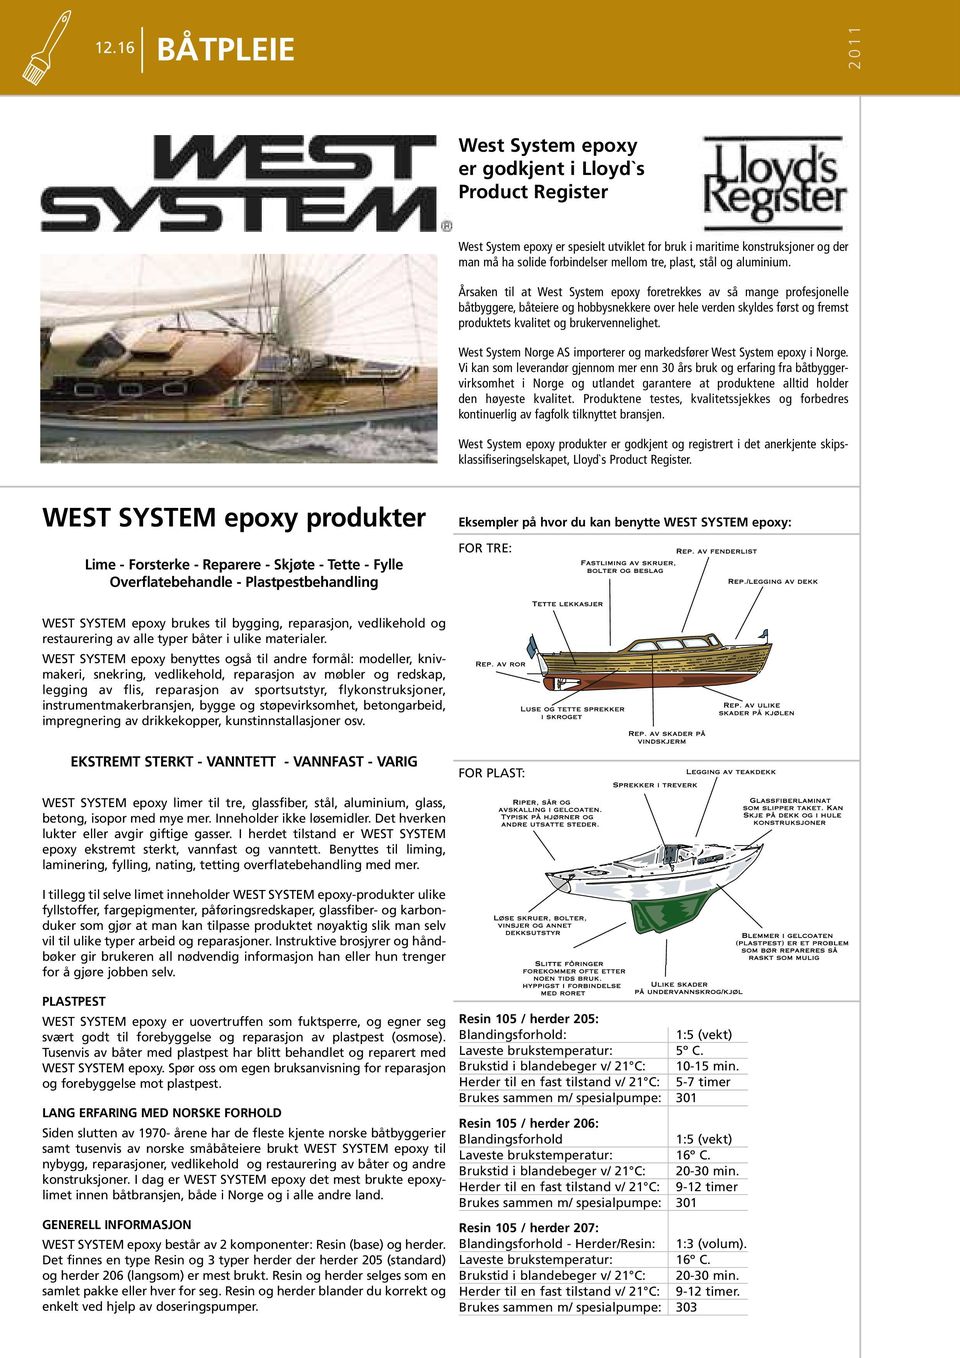 Årsaken til at West System epoxy foretrekkes av så mange profesjonelle båtbyggere, båteiere og hobbysnekkere over hele verden skyldes først og fremst produktets kvalitet og brukervennelighet.